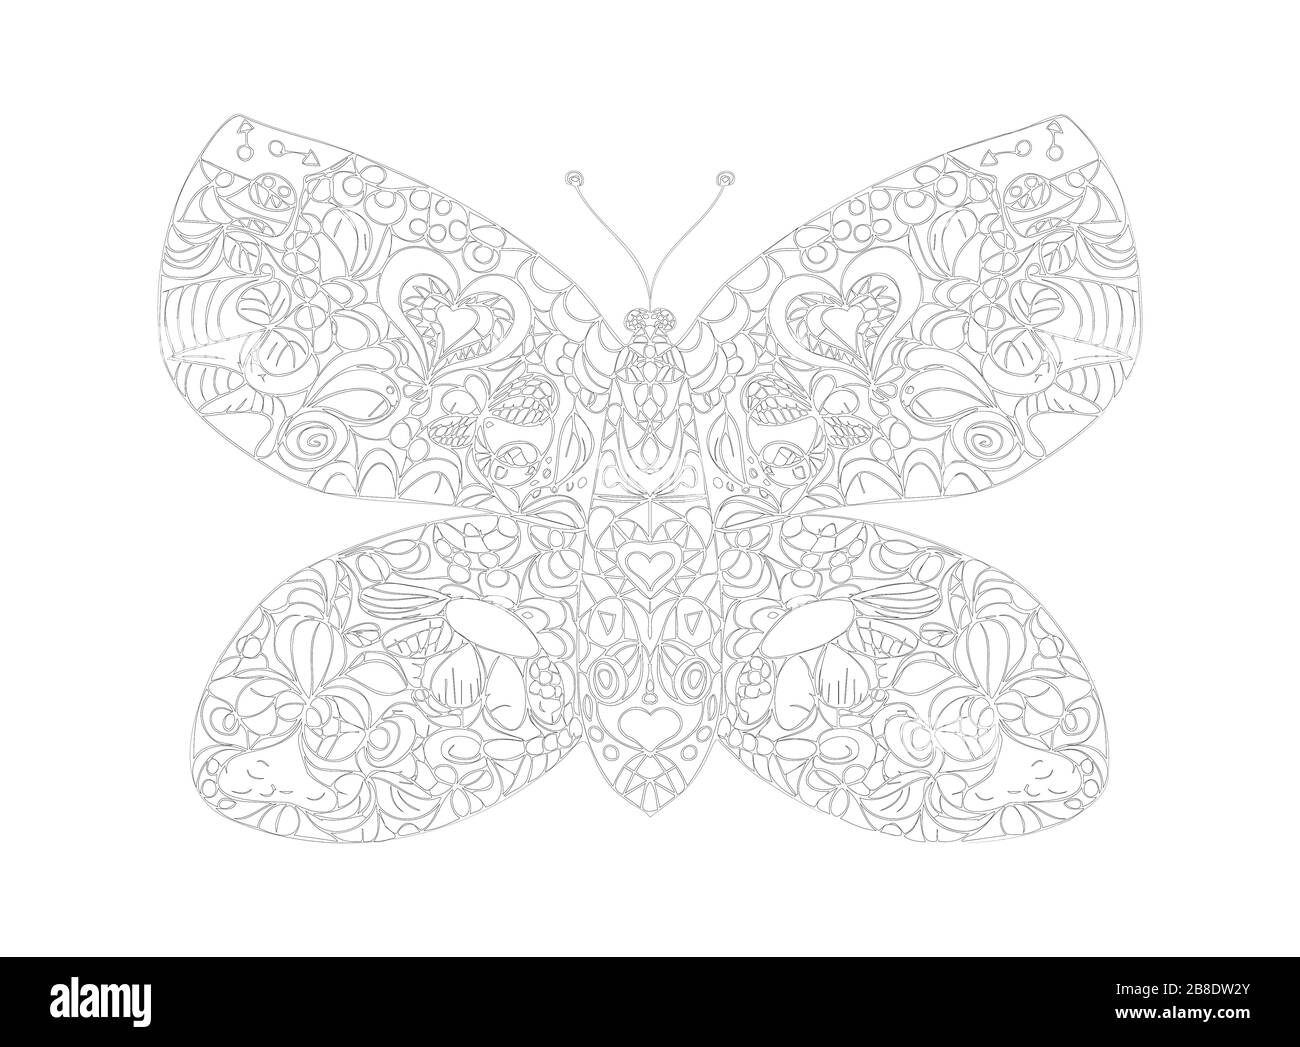 Schmetterling mit handgezeichneter ornamentfarbiger Seite. Malbuch für Erwachsene Stock Vektor